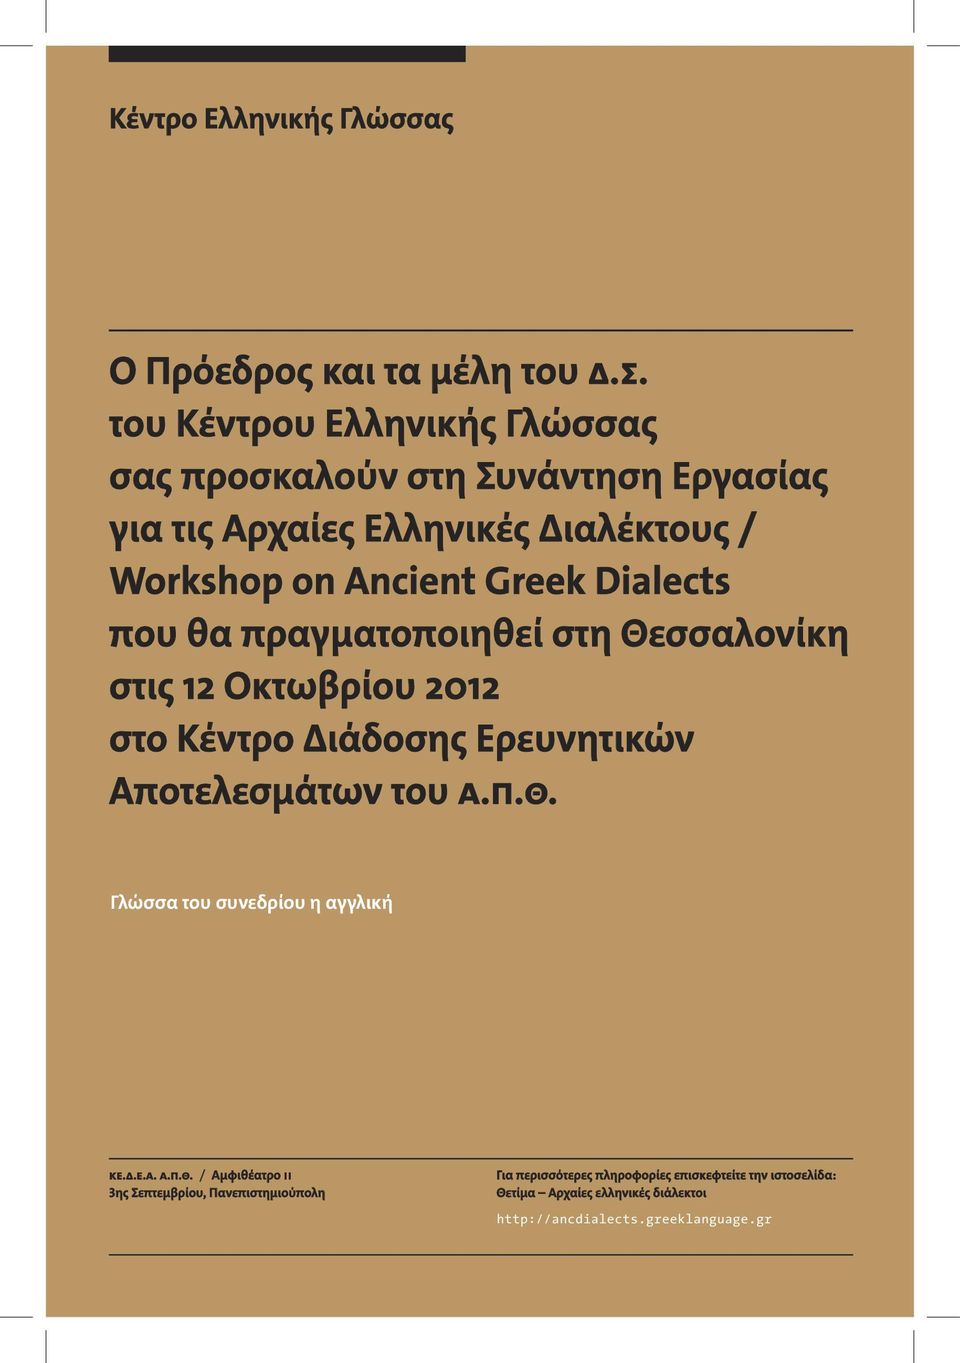 Dialects που θα πραγματοποιηθεί στη Θεσσαλονίκη στις 12 Οκτωβρίου 2012 στο Κέντρο Διάδοσης Ερευνητικών Αποτελεσμάτων του Α.Π.Θ. Γλώσσα του συνεδρίου η αγγλική ΚΕ.